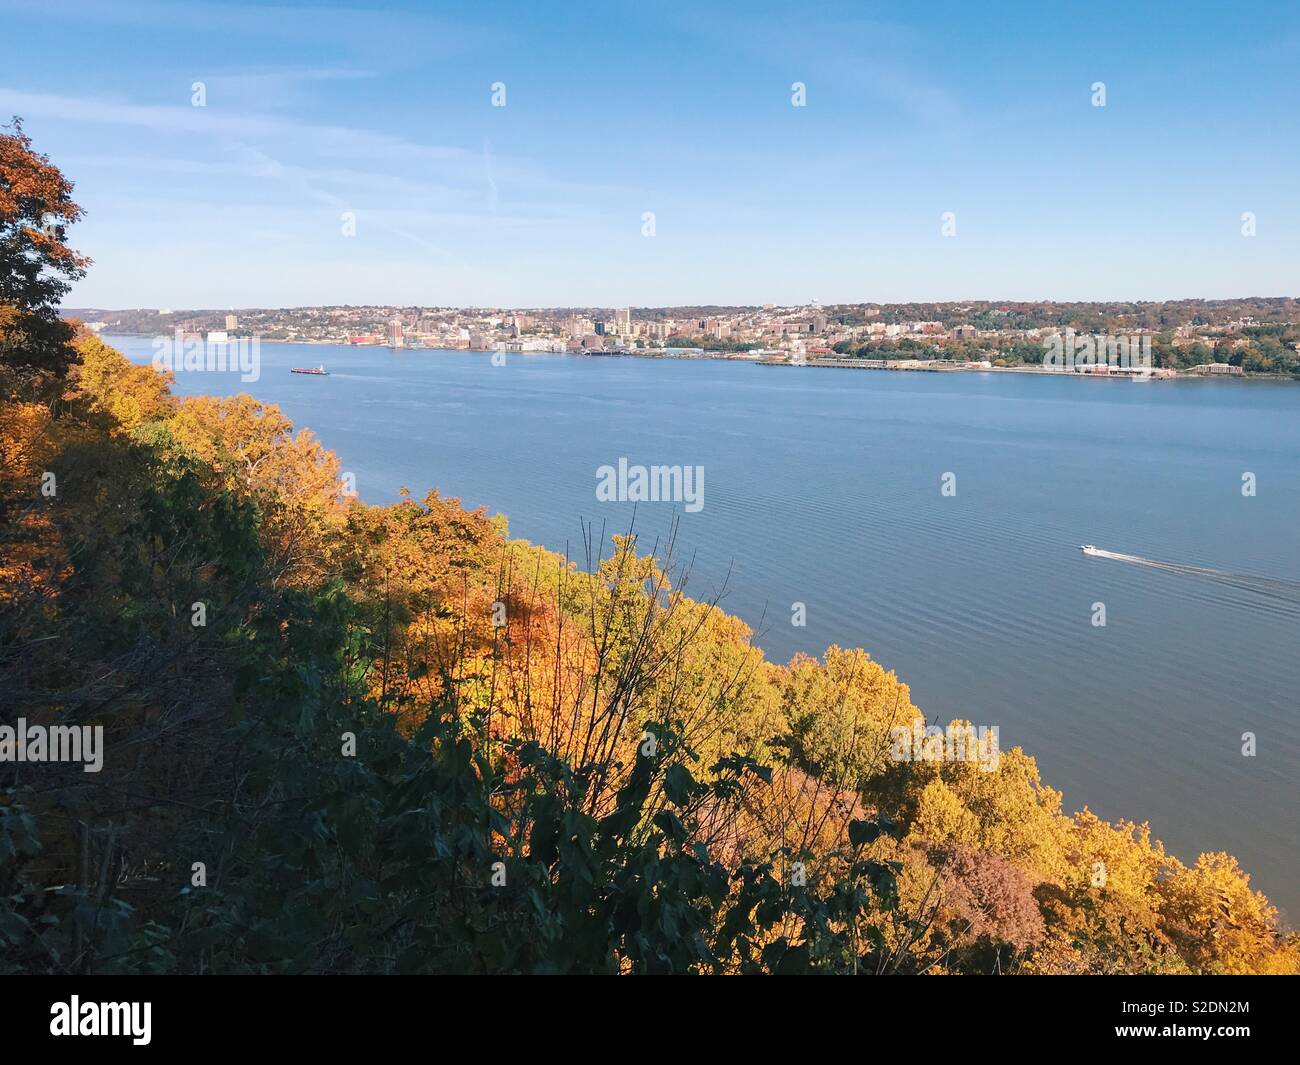 Avis de Yonkers, NY, et la rivière Hudson vu depuis le New Jersey Palisades en automne. Banque D'Images